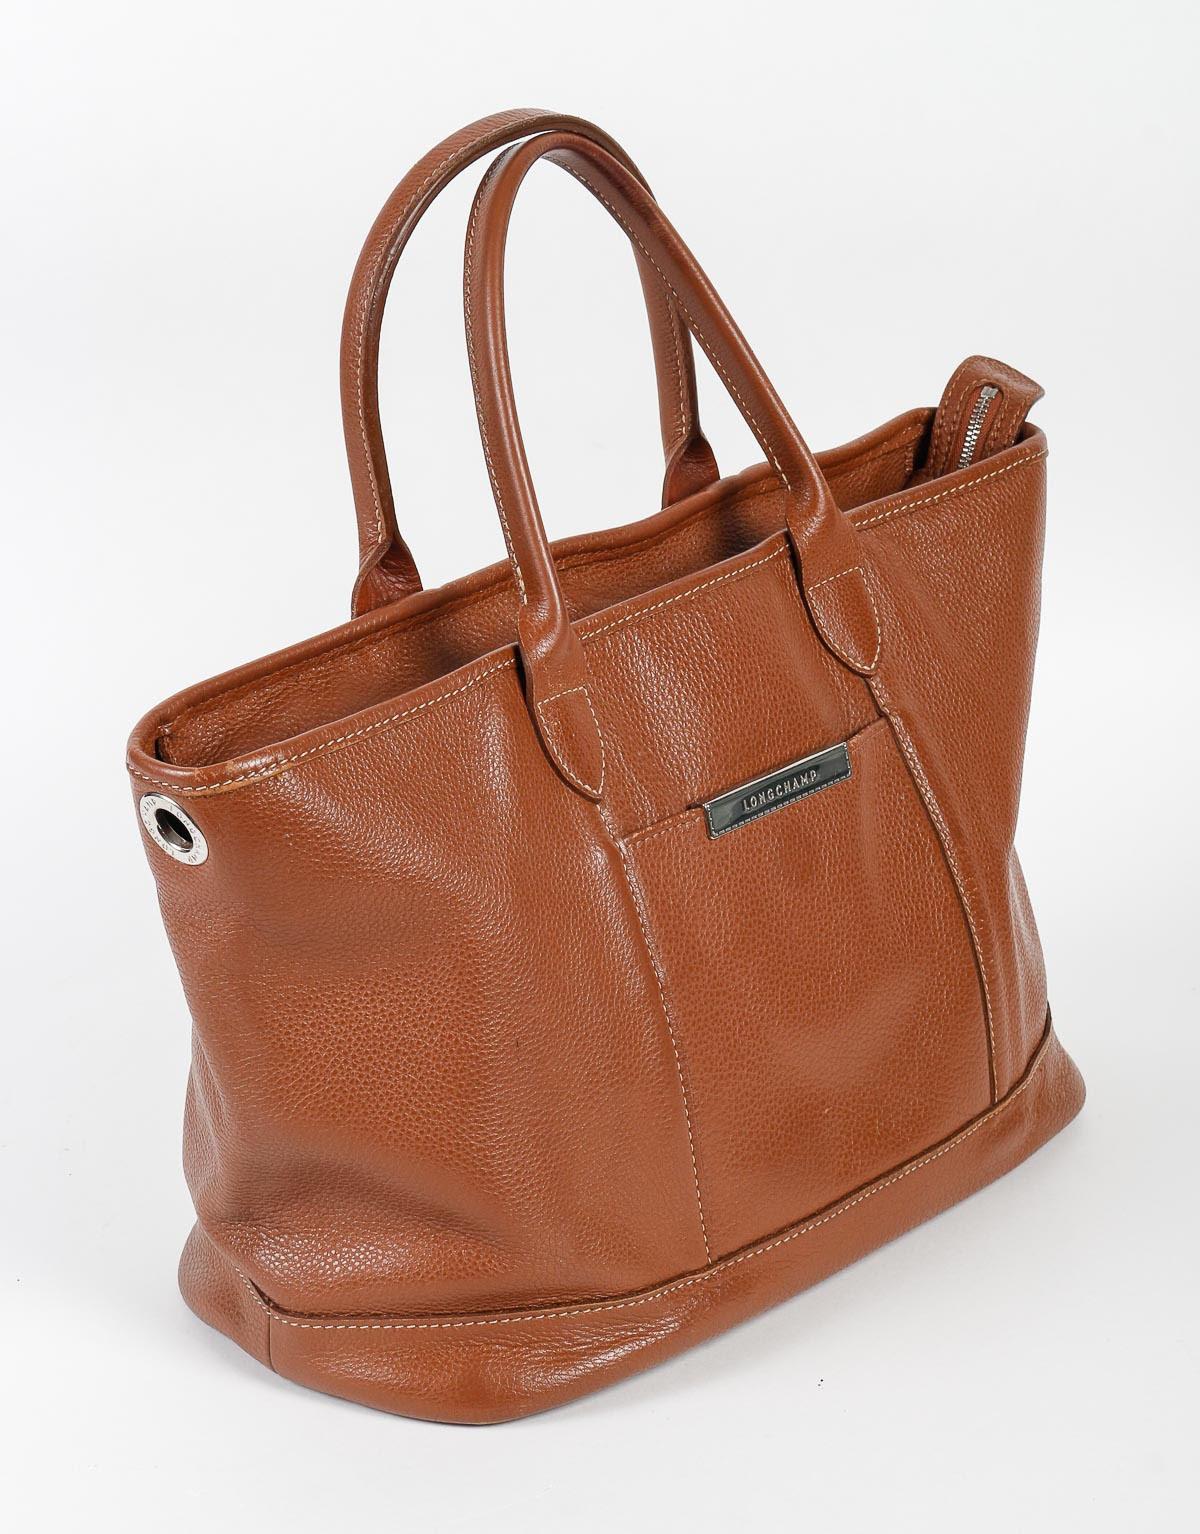 Handbag, Longchamp, Brown grained leather, 20th century.

Handbag, Longchamp, brown grained leather, good condition, XXth century.    
h: 29cm , w: 37cm, d: 13cm